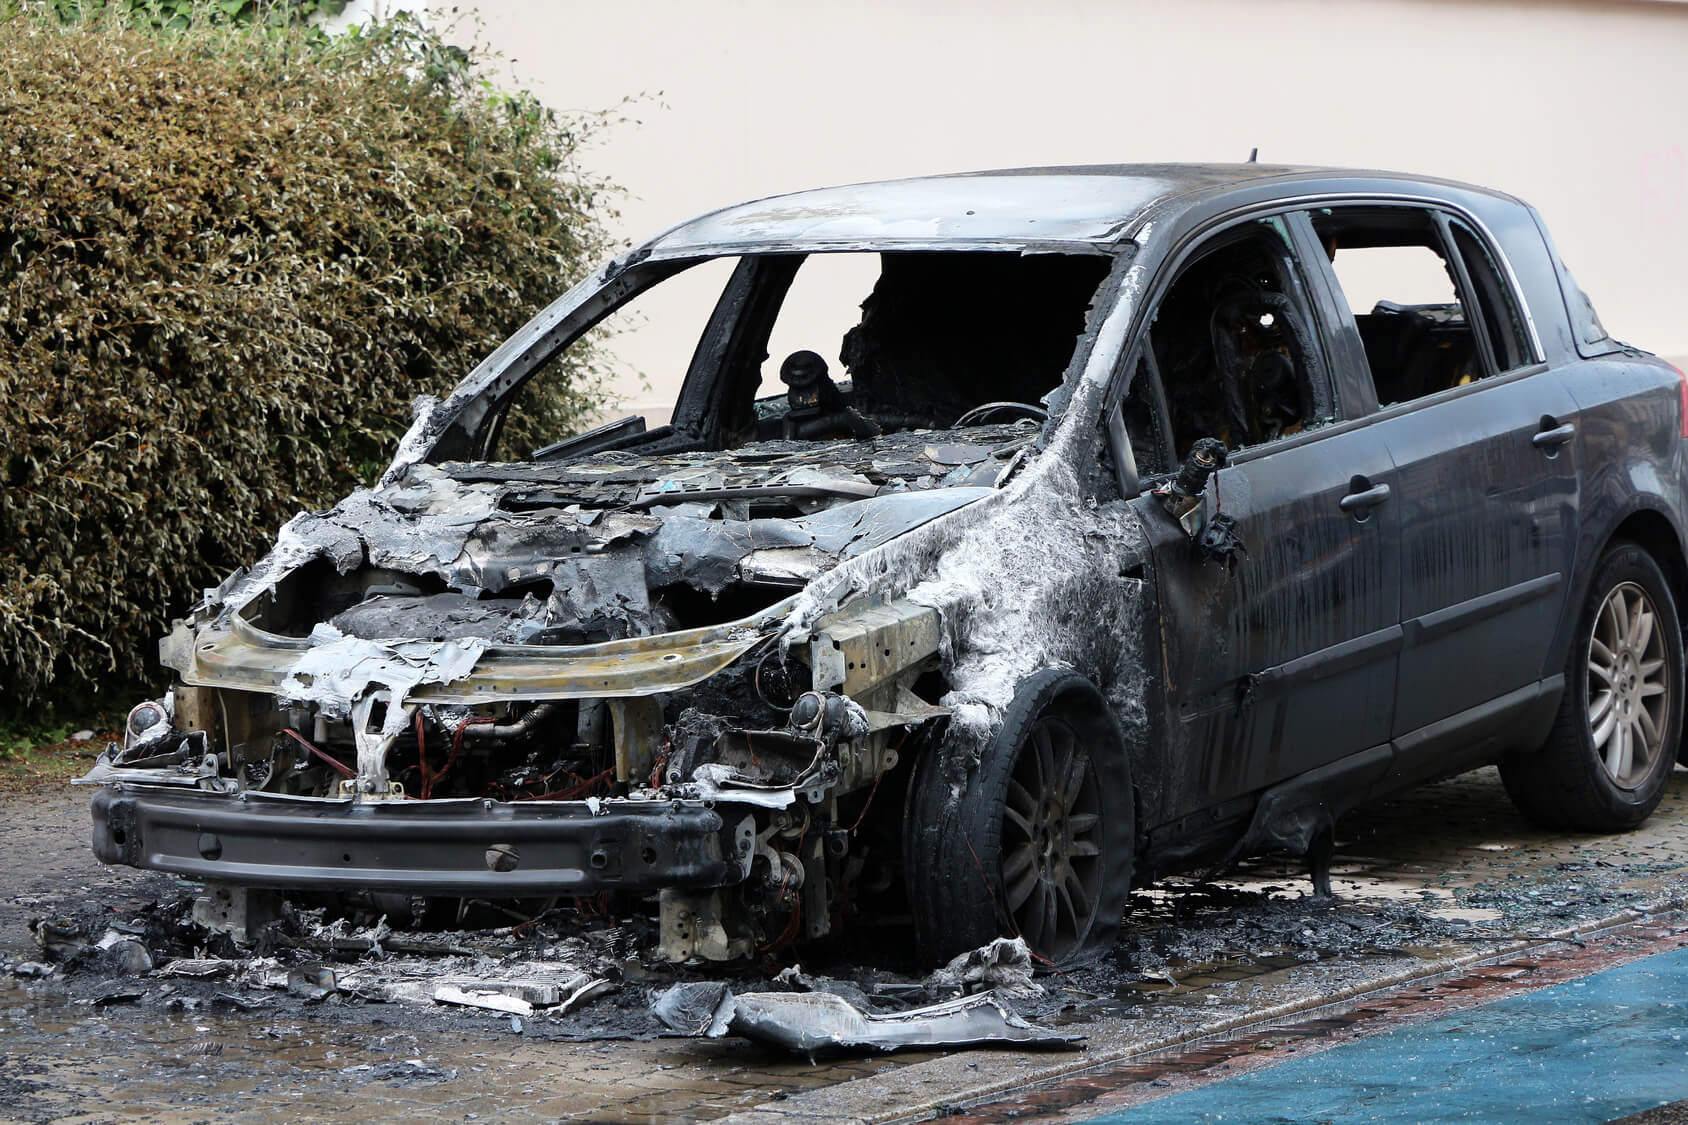 Feu de voitures à Aire-sur-la-Lys : trahis par leurs mains brûlées